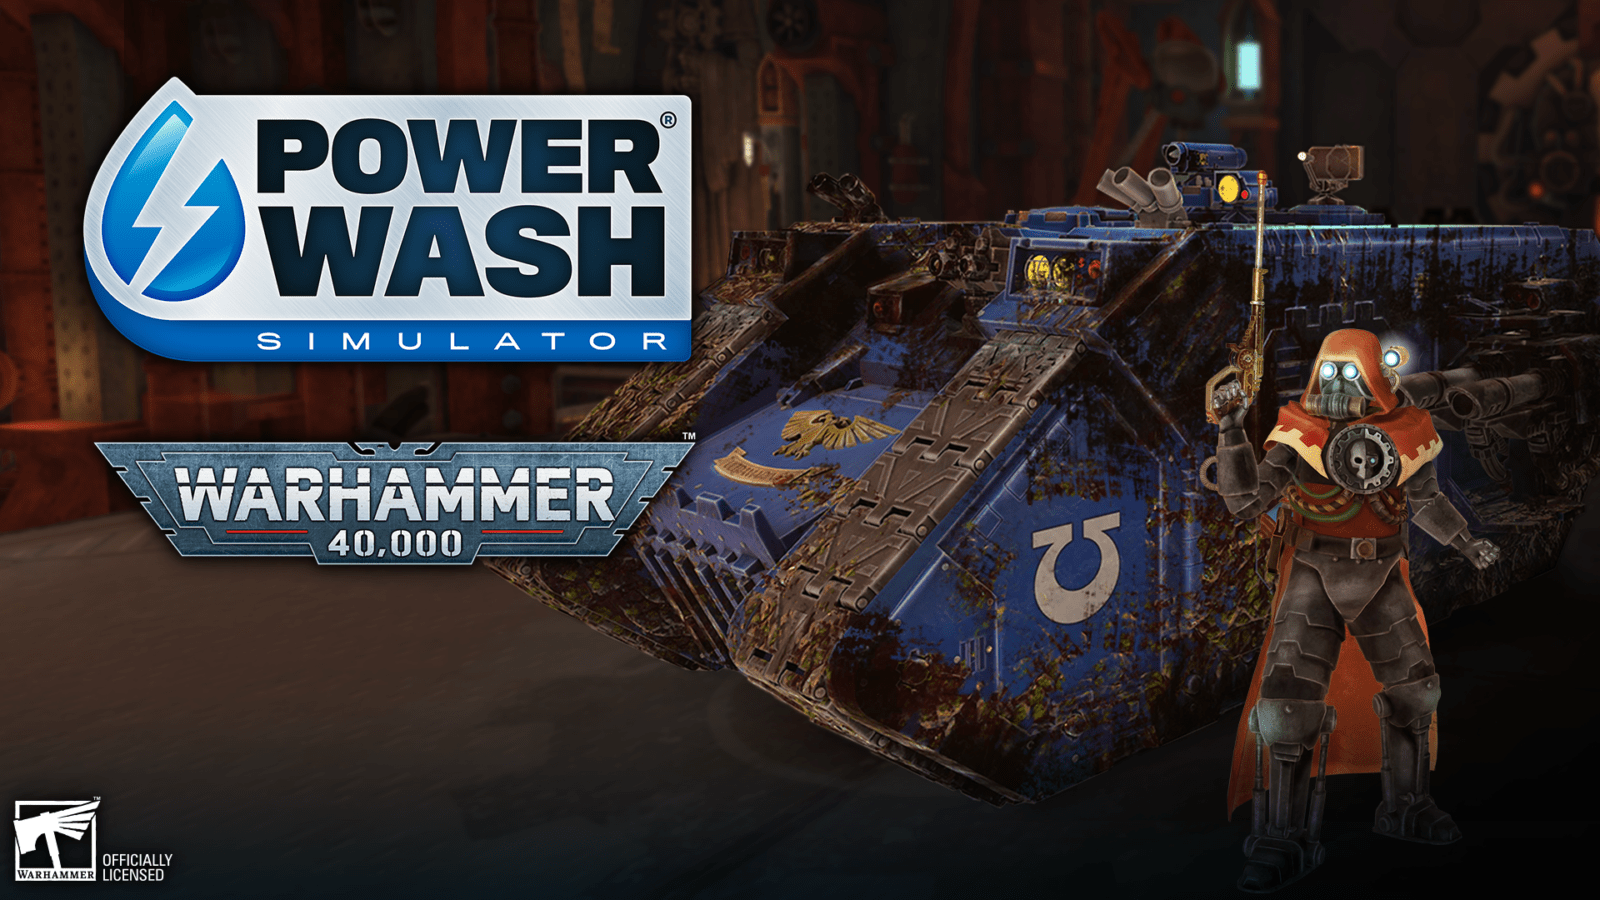 PowerWash Simulator Warhammer 40,000 Speicial Pack ganha data de lançamento para Nintendo Switch